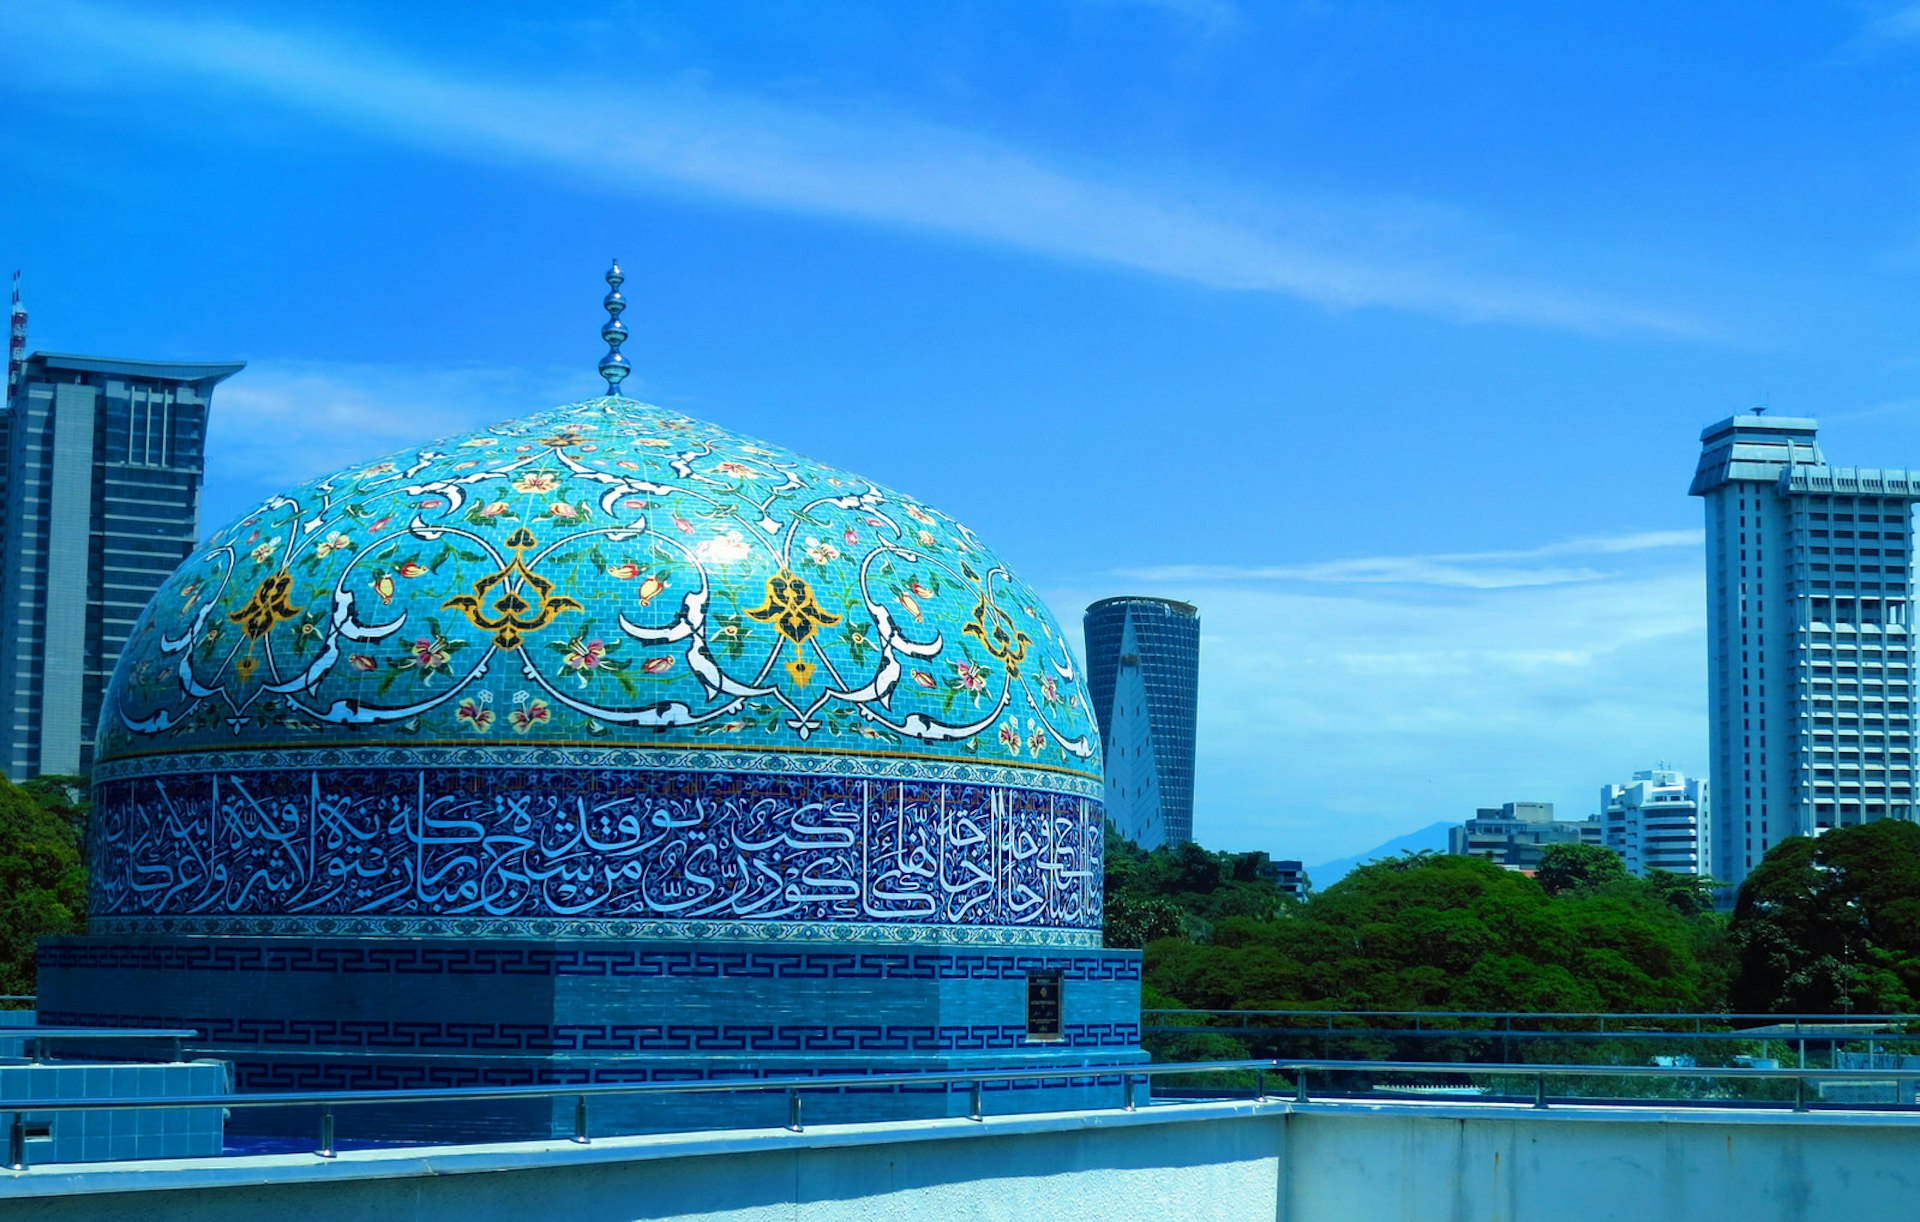 The intricate dome of the Islamic Arts Museum in Kuala Lumpur